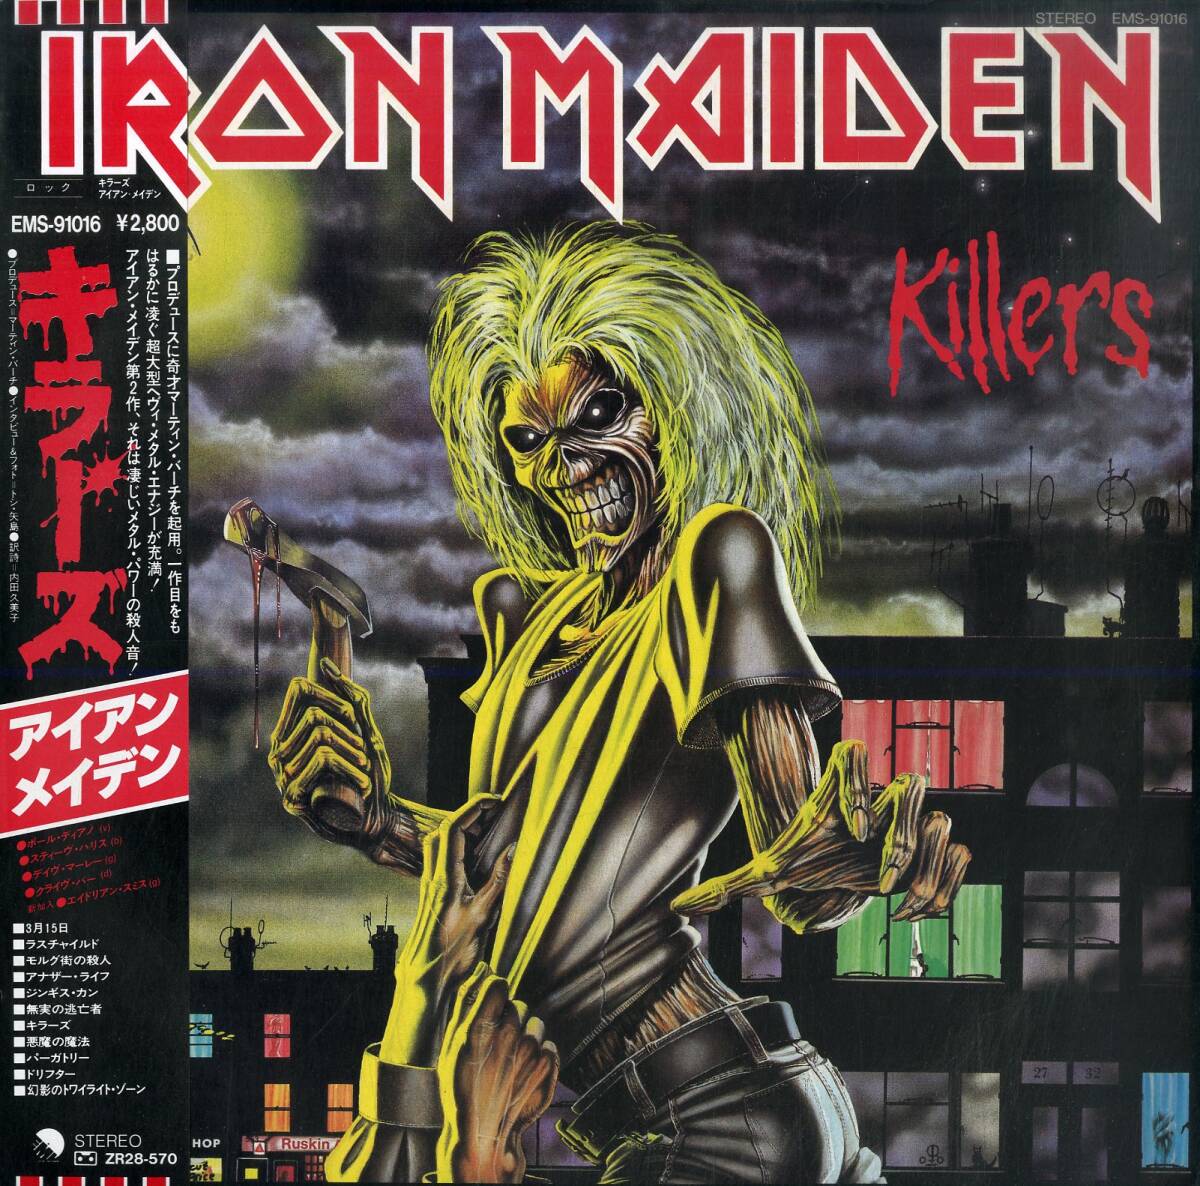 A00593978/LP/アイアン・メイデン (IRON MAIDEN)「Killers (1981年・EMS-91016・へヴィメタル)」の画像1